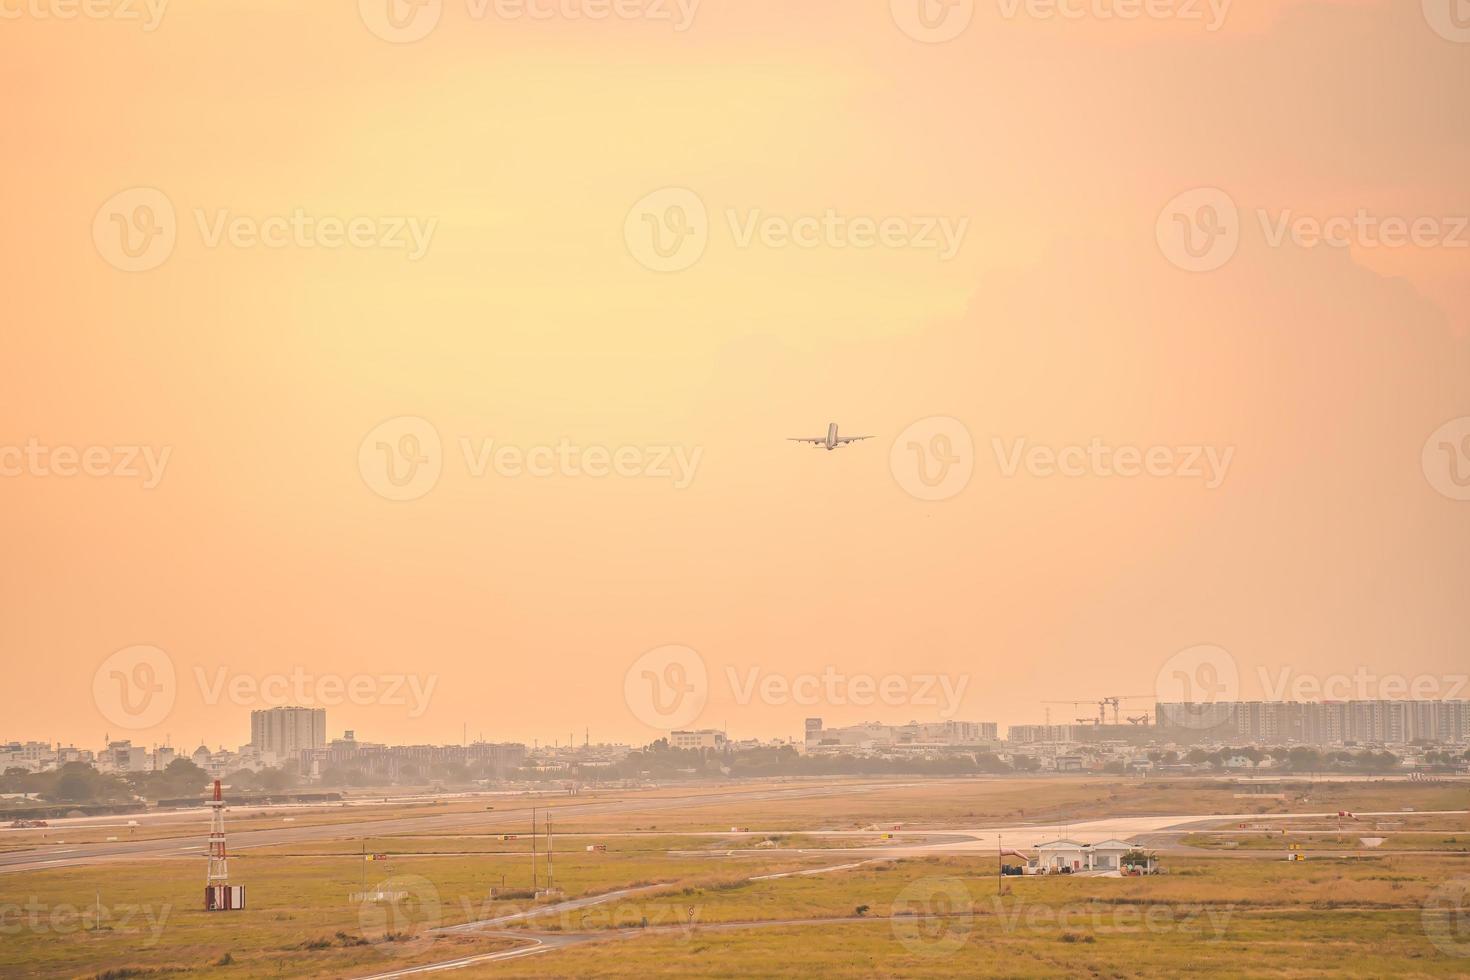 città di ho chi minh, vietnam - 12 febbraio 2022 l'aeroplano sorvola le aree urbane preparando l'atterraggio all'aeroporto internazionale di Tan Son Nhat e decolla all'aeroporto di tsn foto